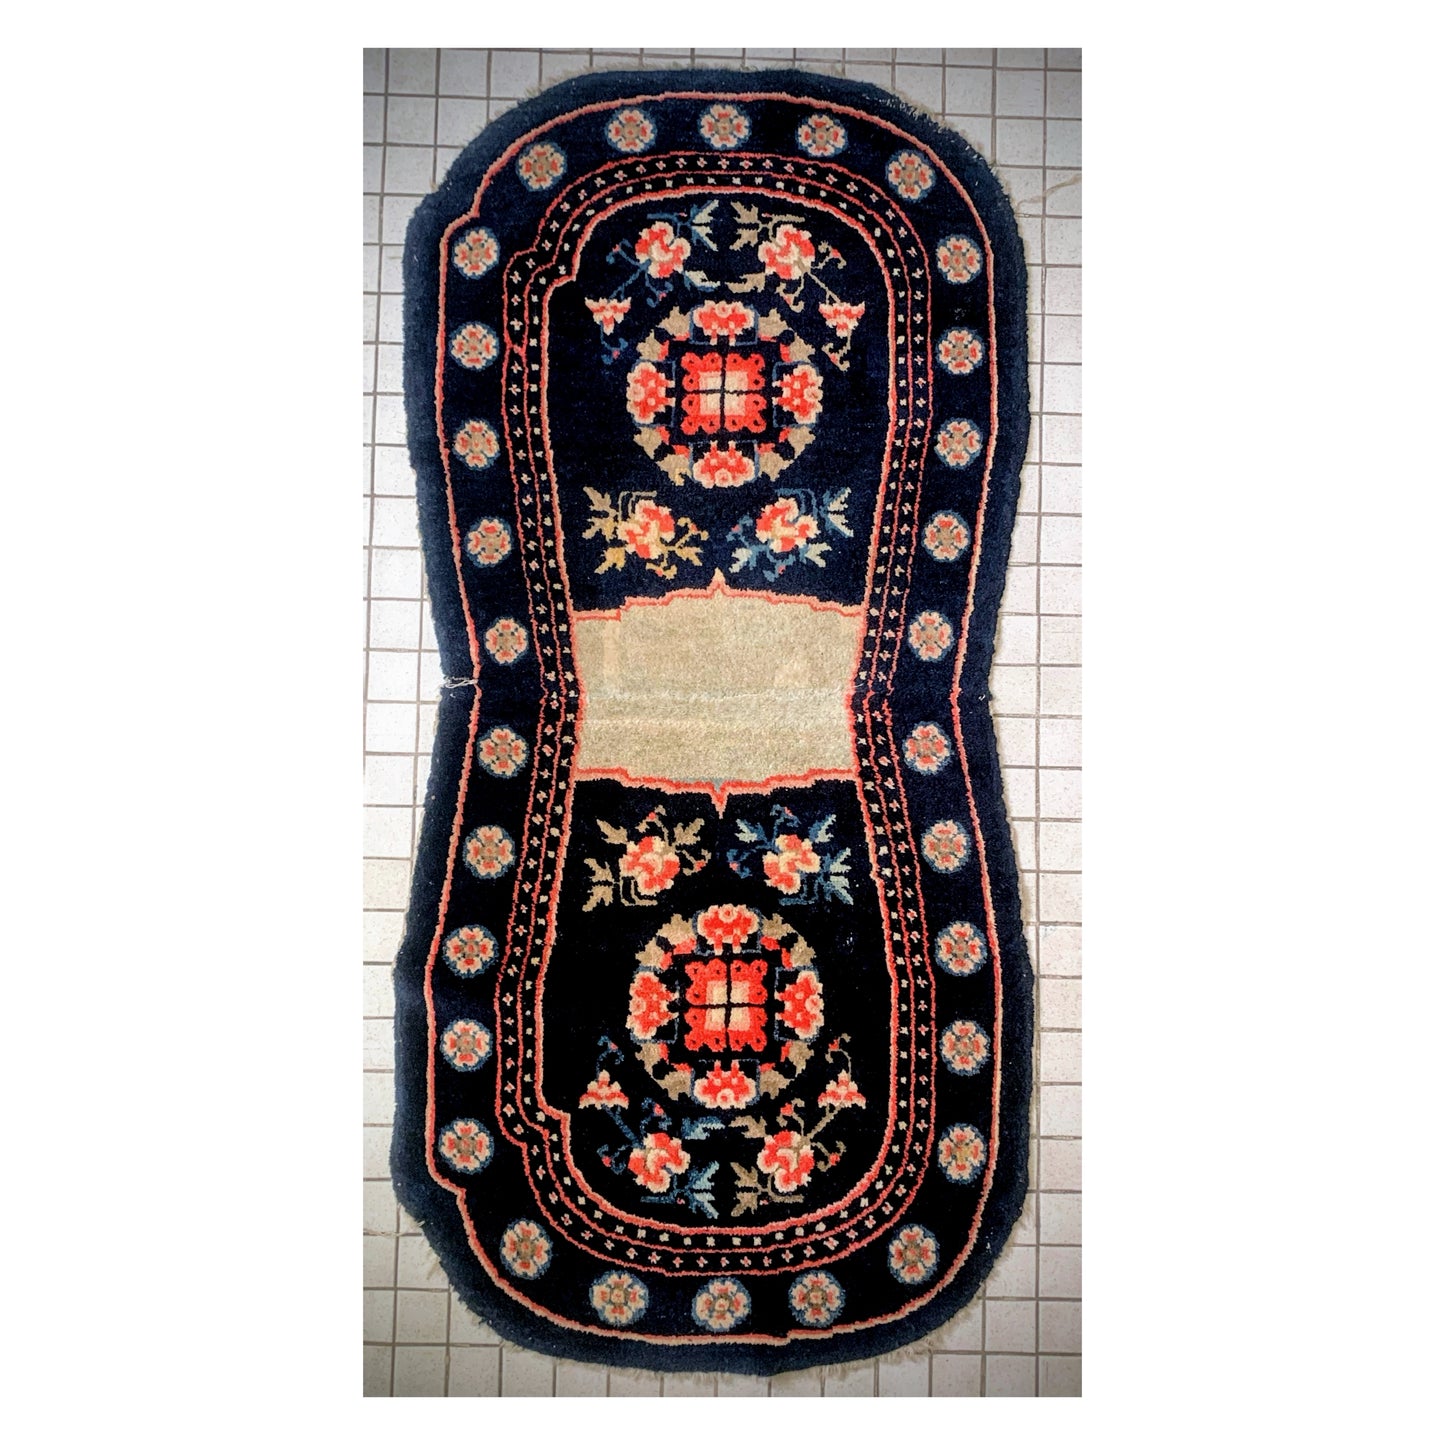 A vintage saddle rug